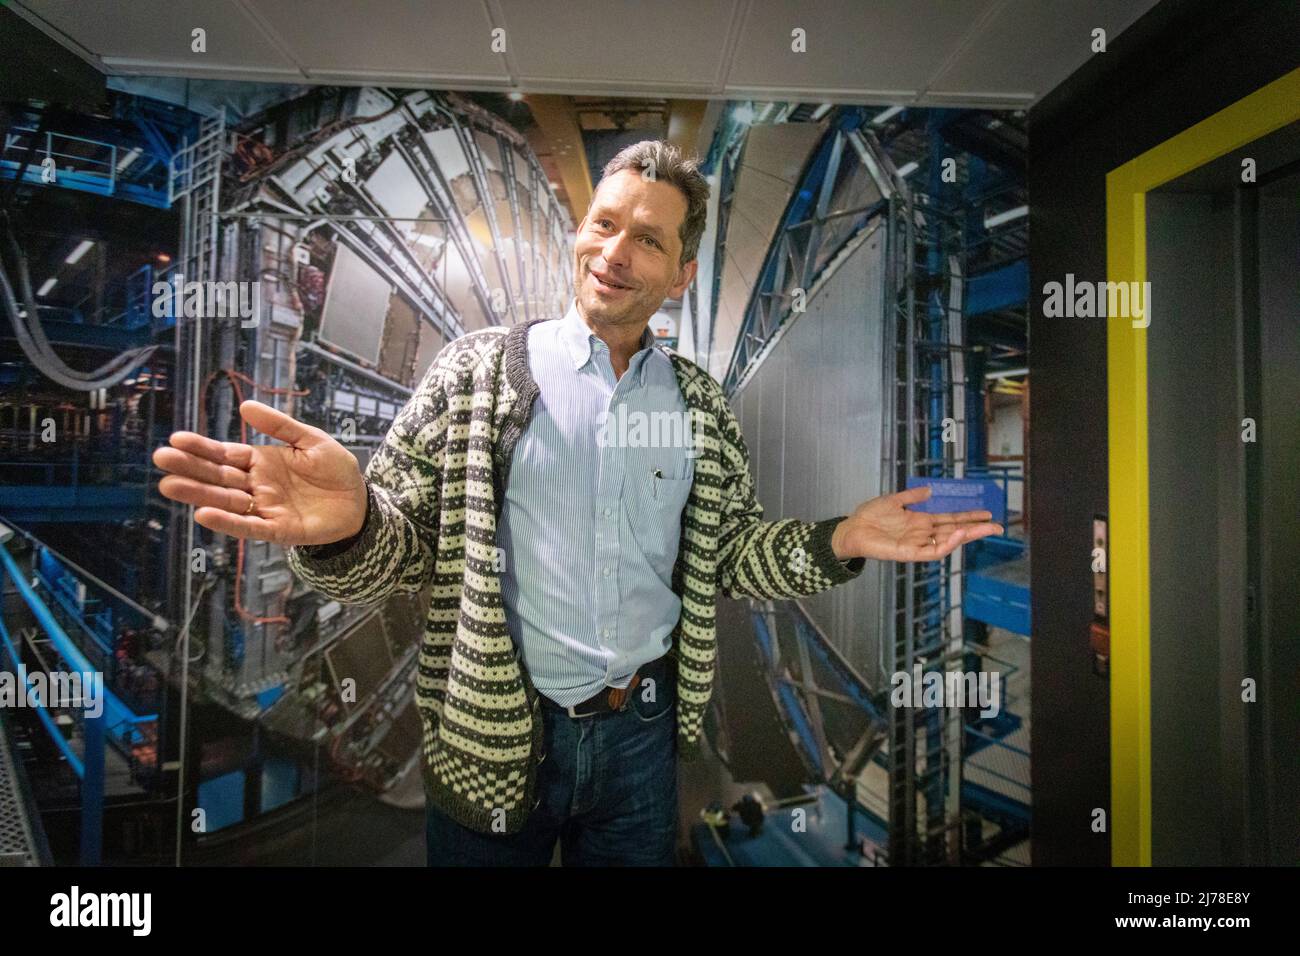 El bibliotecario jefe del CERN, noruego Jens Vigen, explica la fascinante línea de tiempo que ha llevado al centro de investigación a la actualidad. Los científicos e ingenieros del CERN se están preparando para el próximo gran capítulo de la historia del laboratorio de investigación más grande del mundo. Están en marcha planes para construir otro colisionador de partículas que es cuatro veces mayor que el existente LHC - Colisionador de Hadrones Grande. Foto de stock